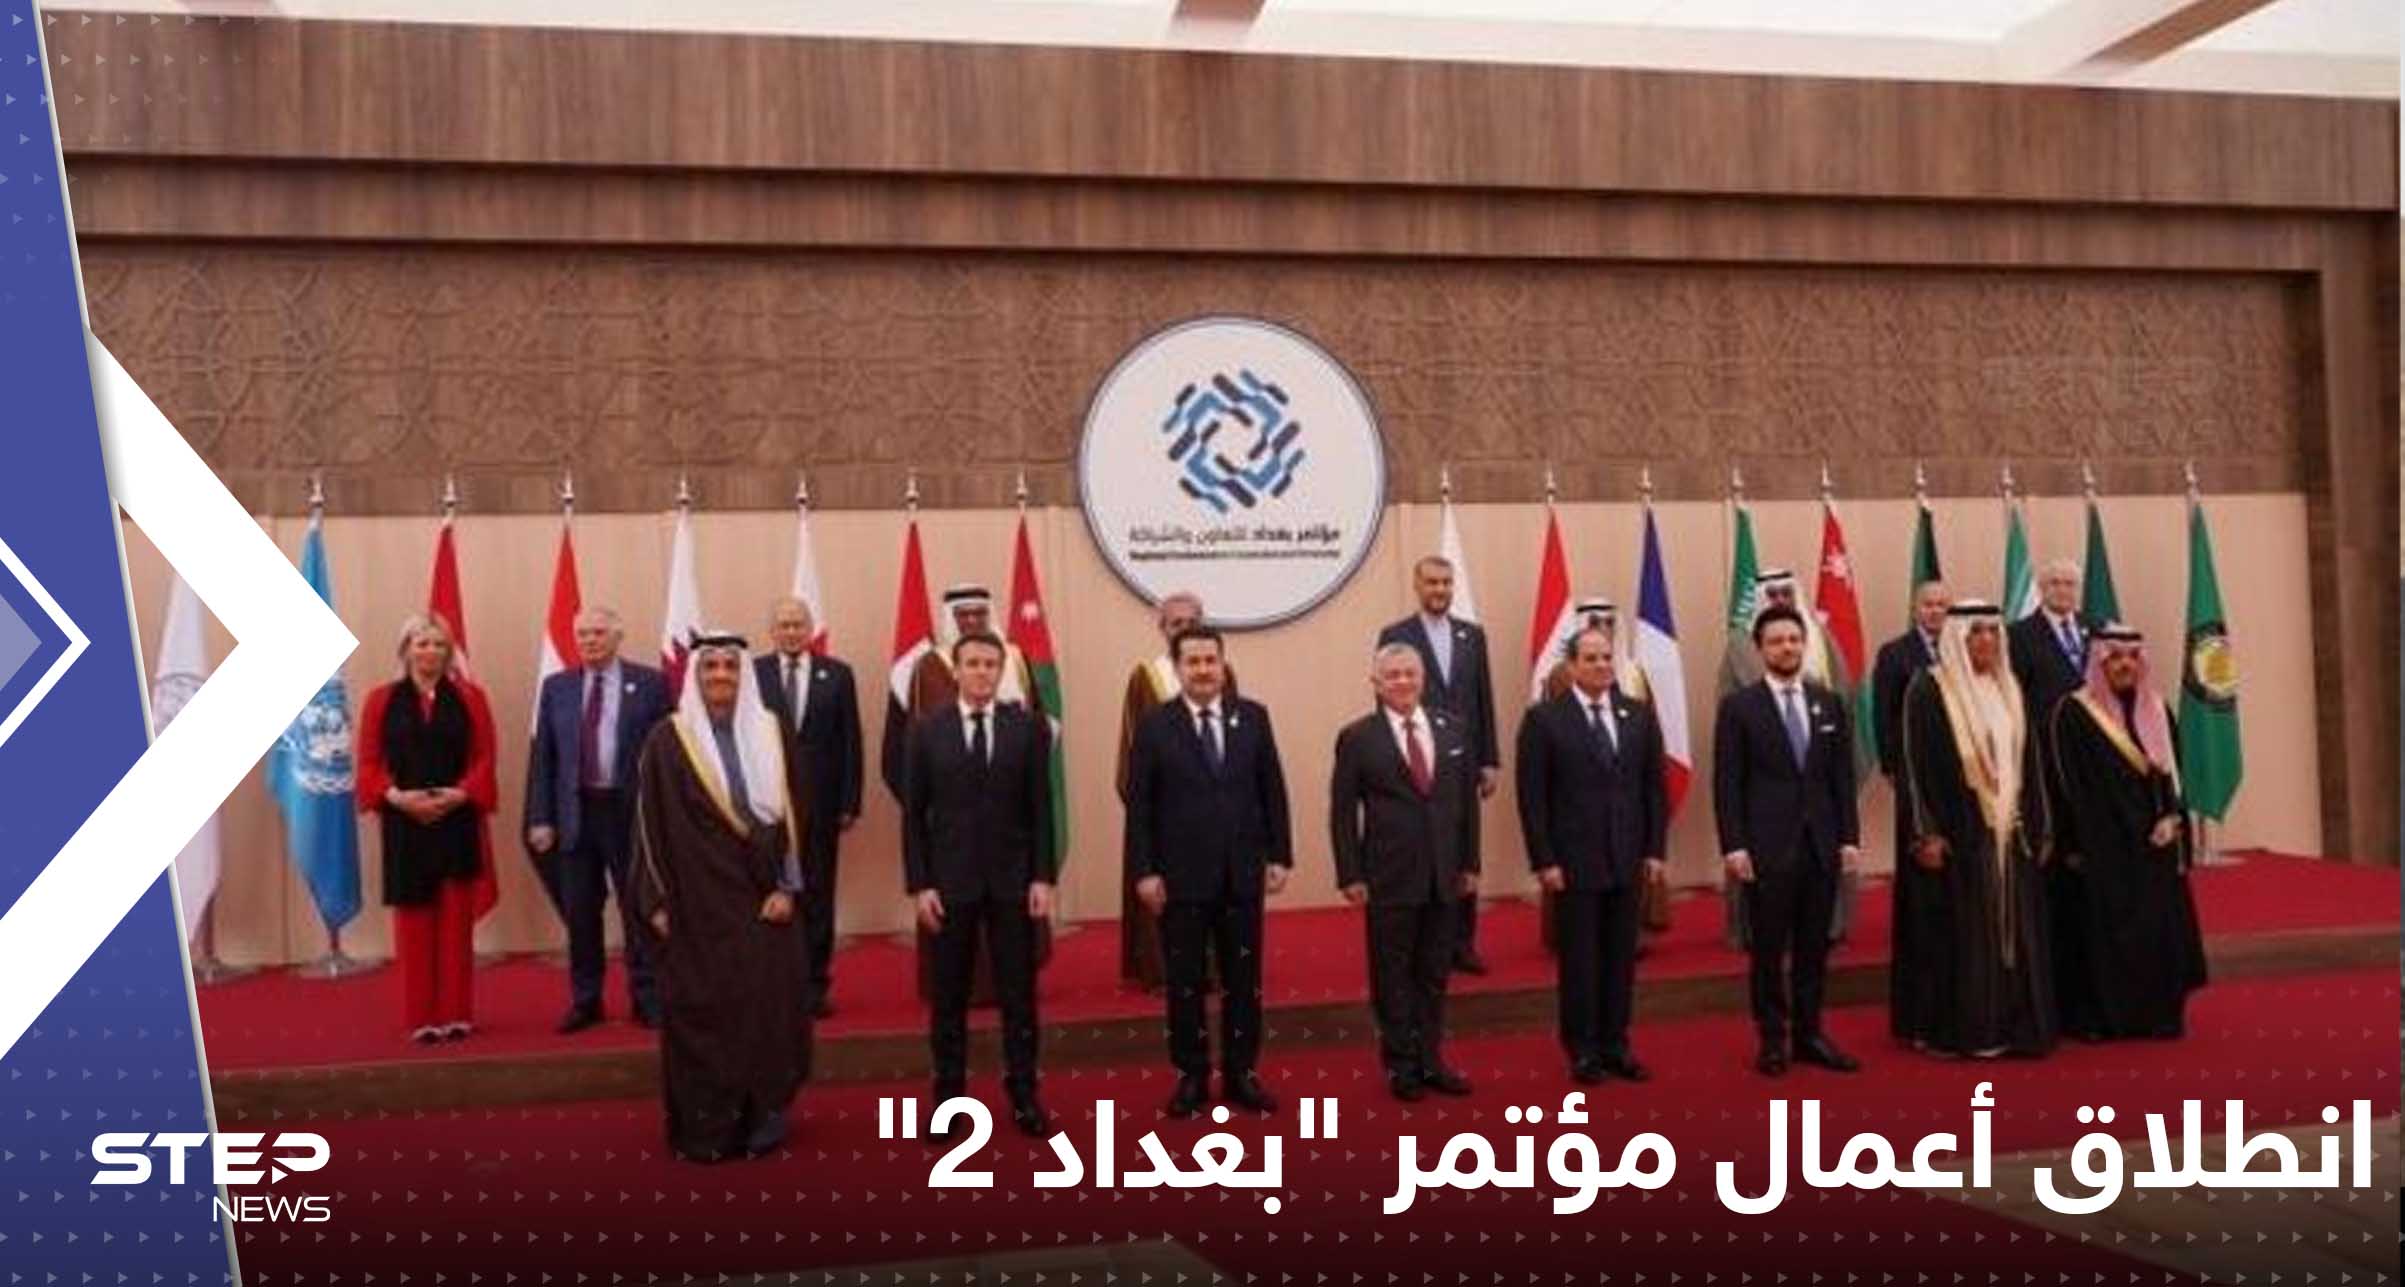 بمشاركة 12 دولة.. انطلاق أعمال مؤتمر "بغداد 2" في الأردن